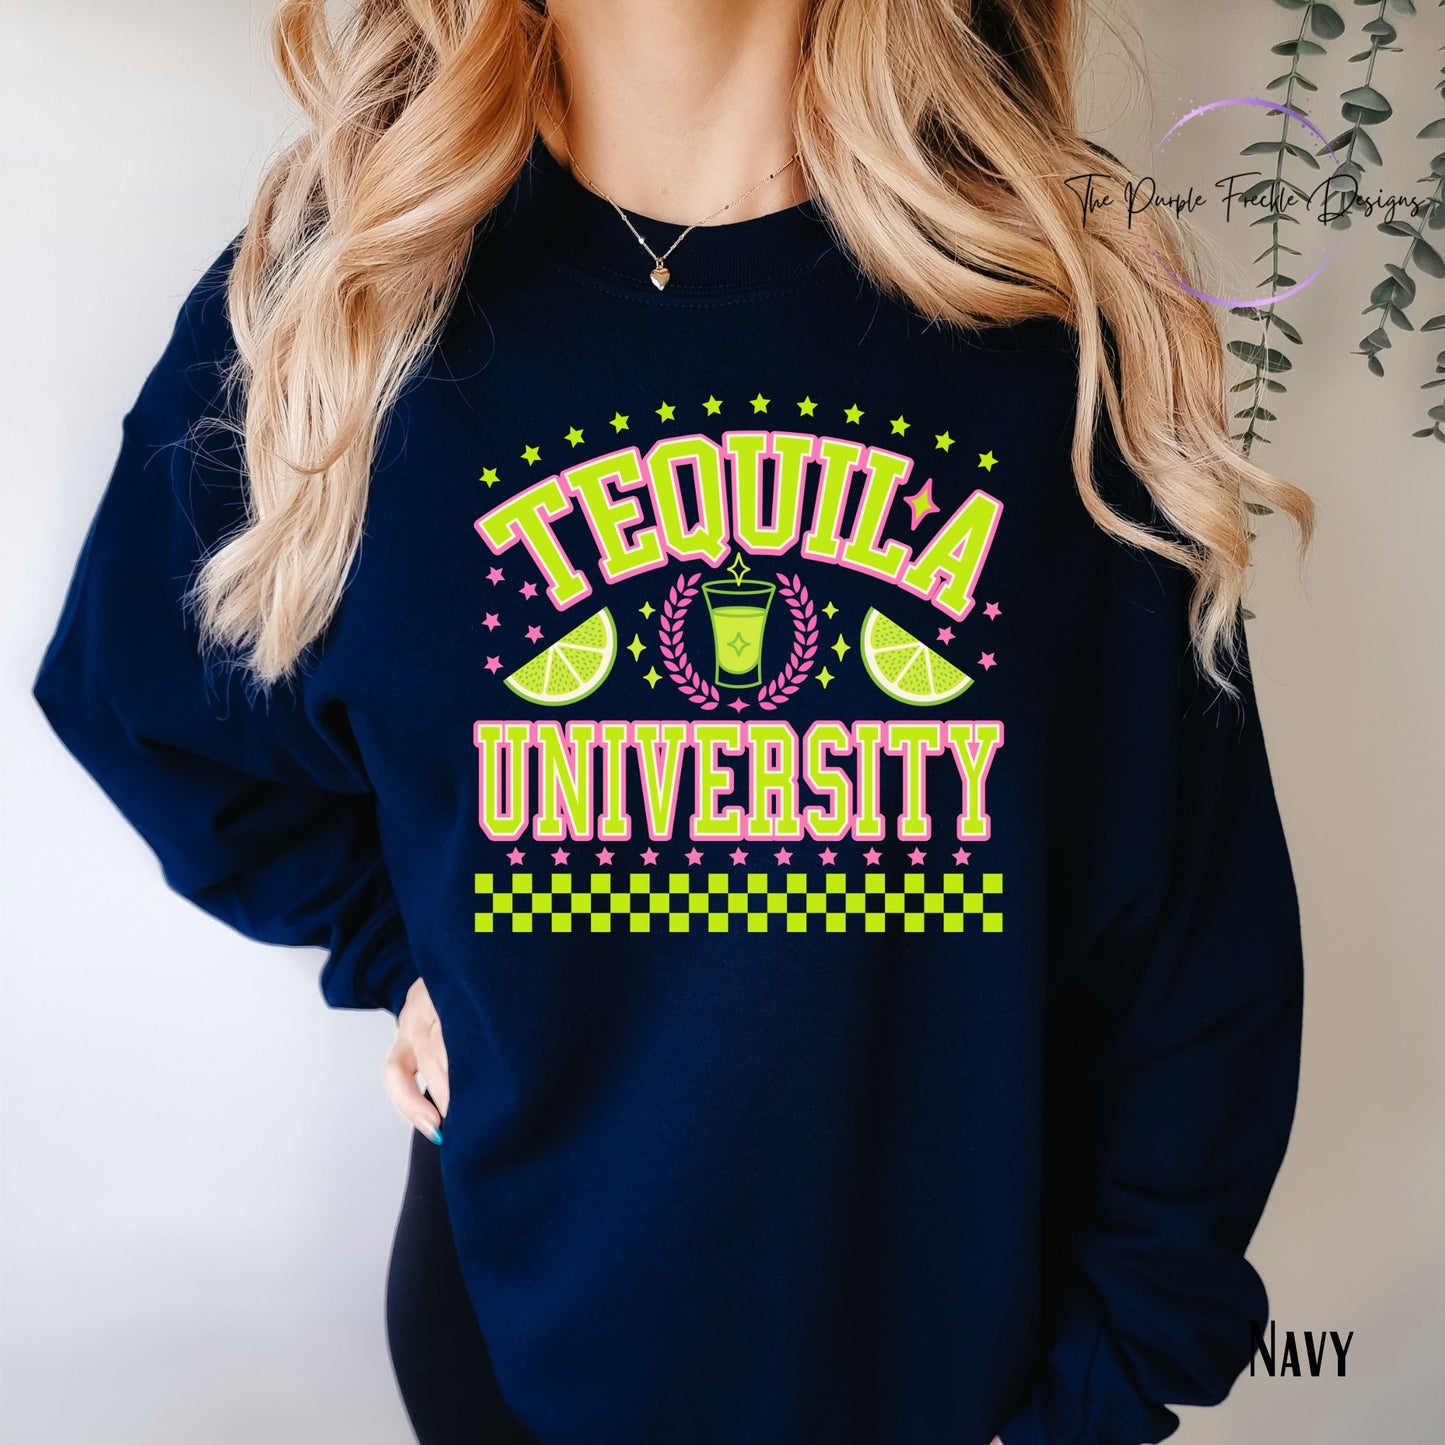 Tequila University